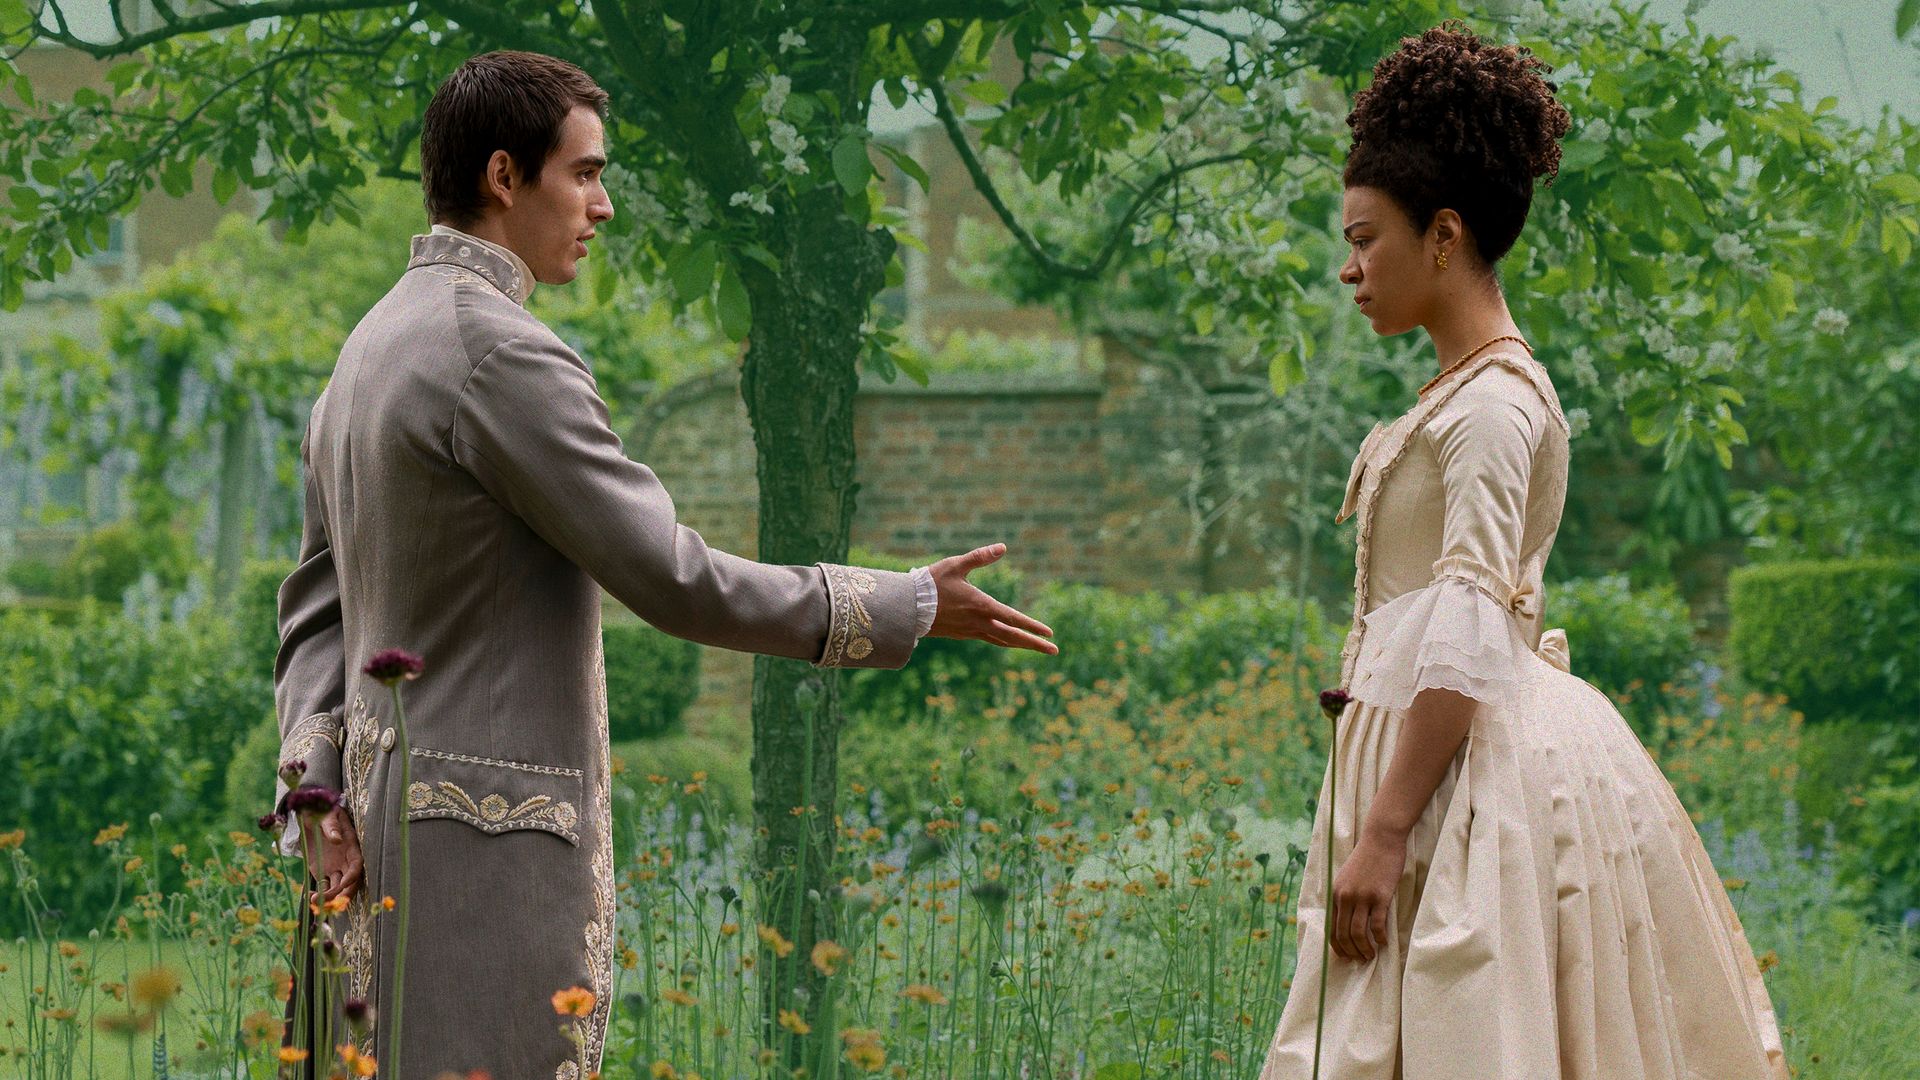 La Reina Charlotte y el Rey George III se conocen en el jardín